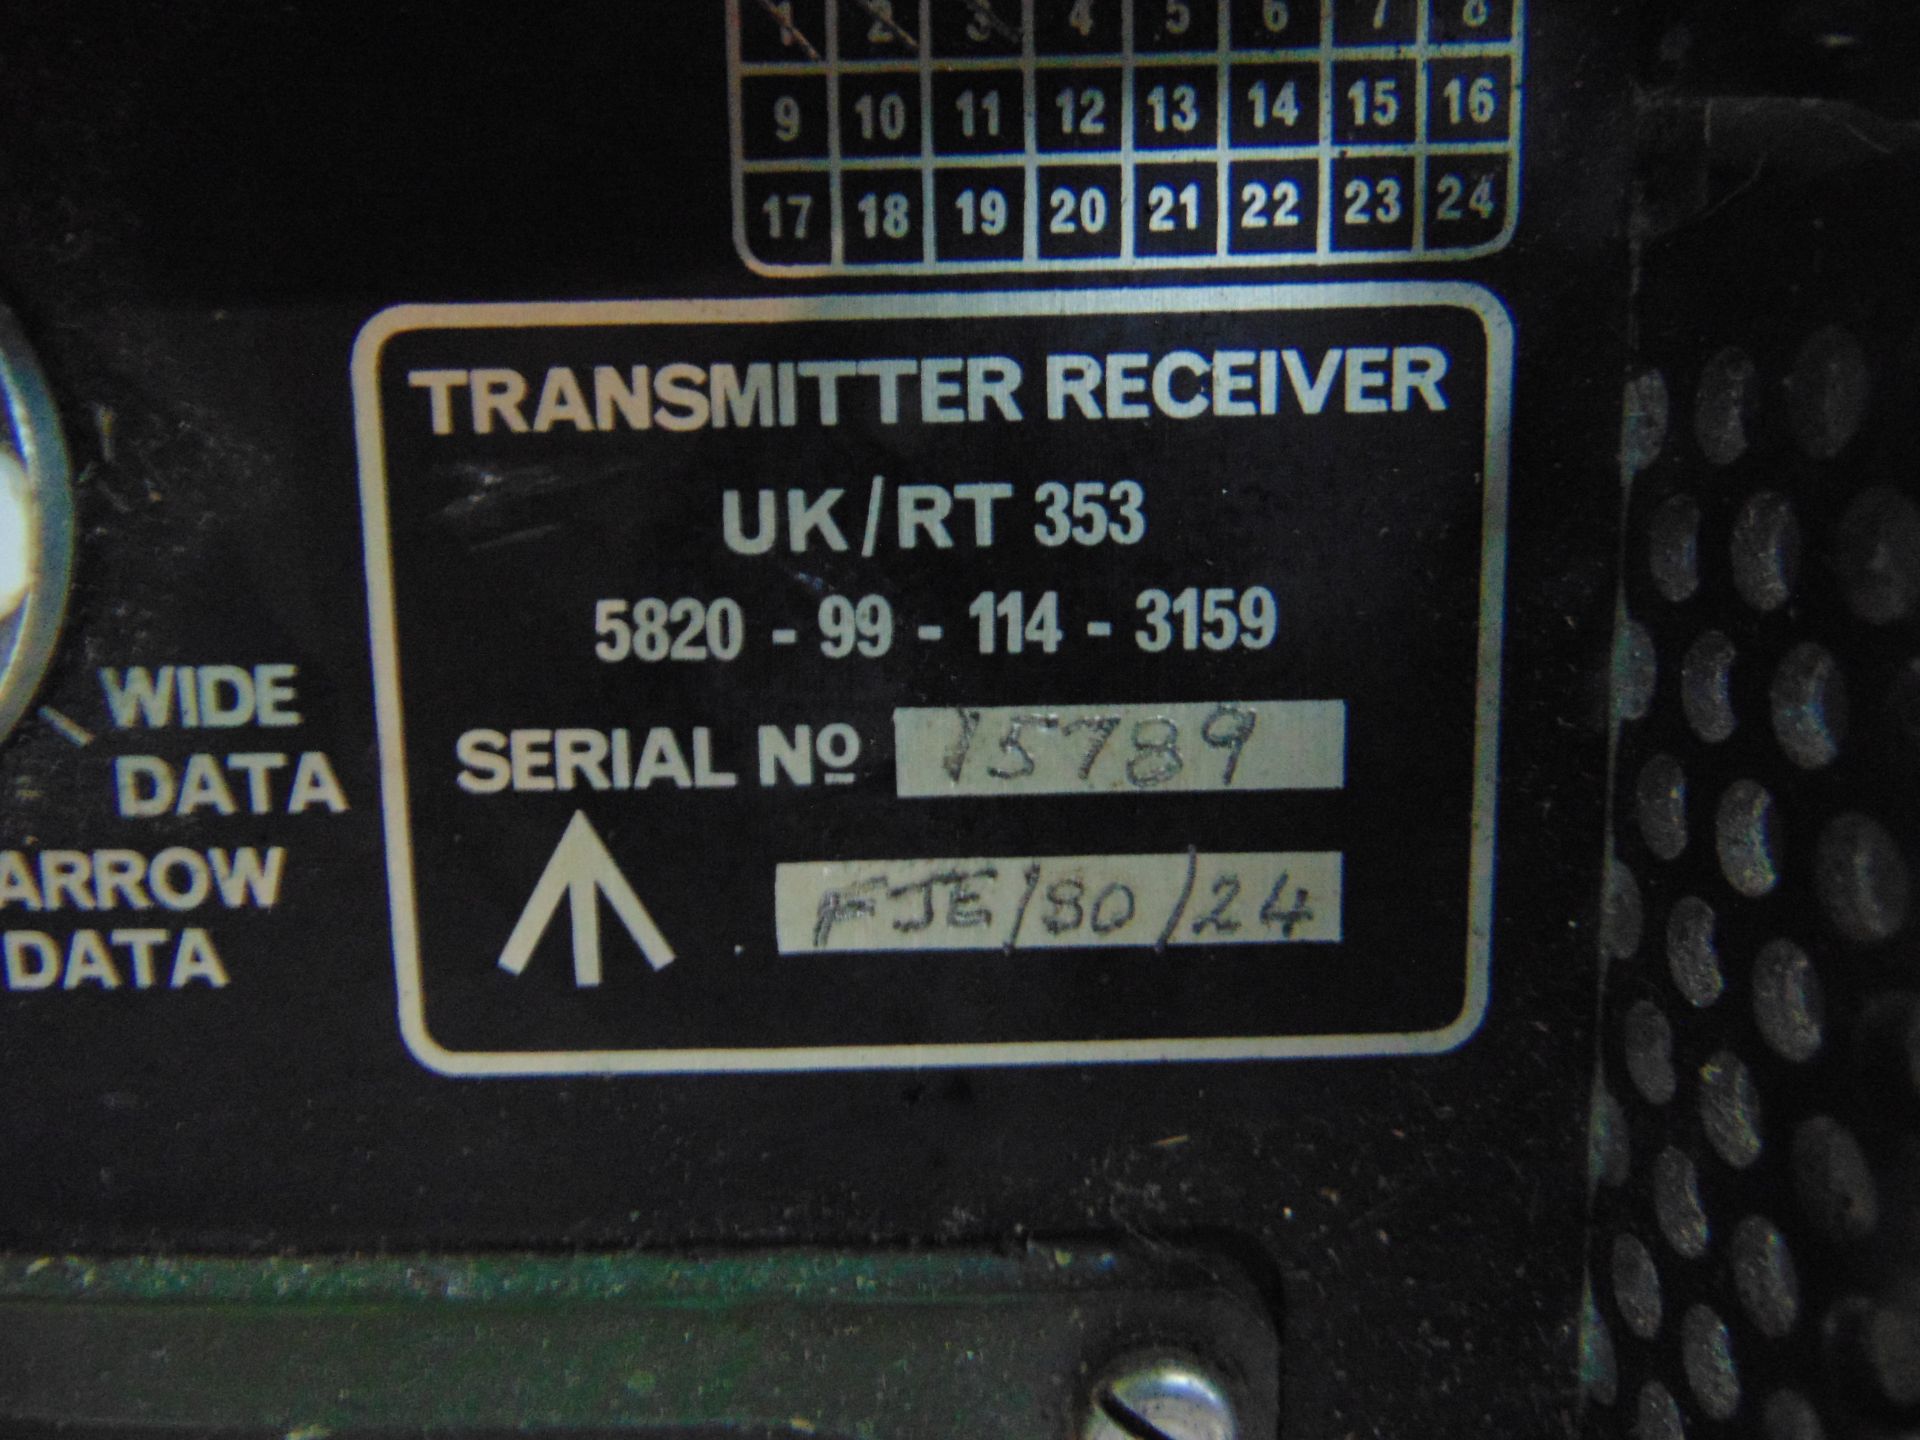 Clansman UK RT 353 VHF Transmitter Receiver Radio - Image 4 of 5